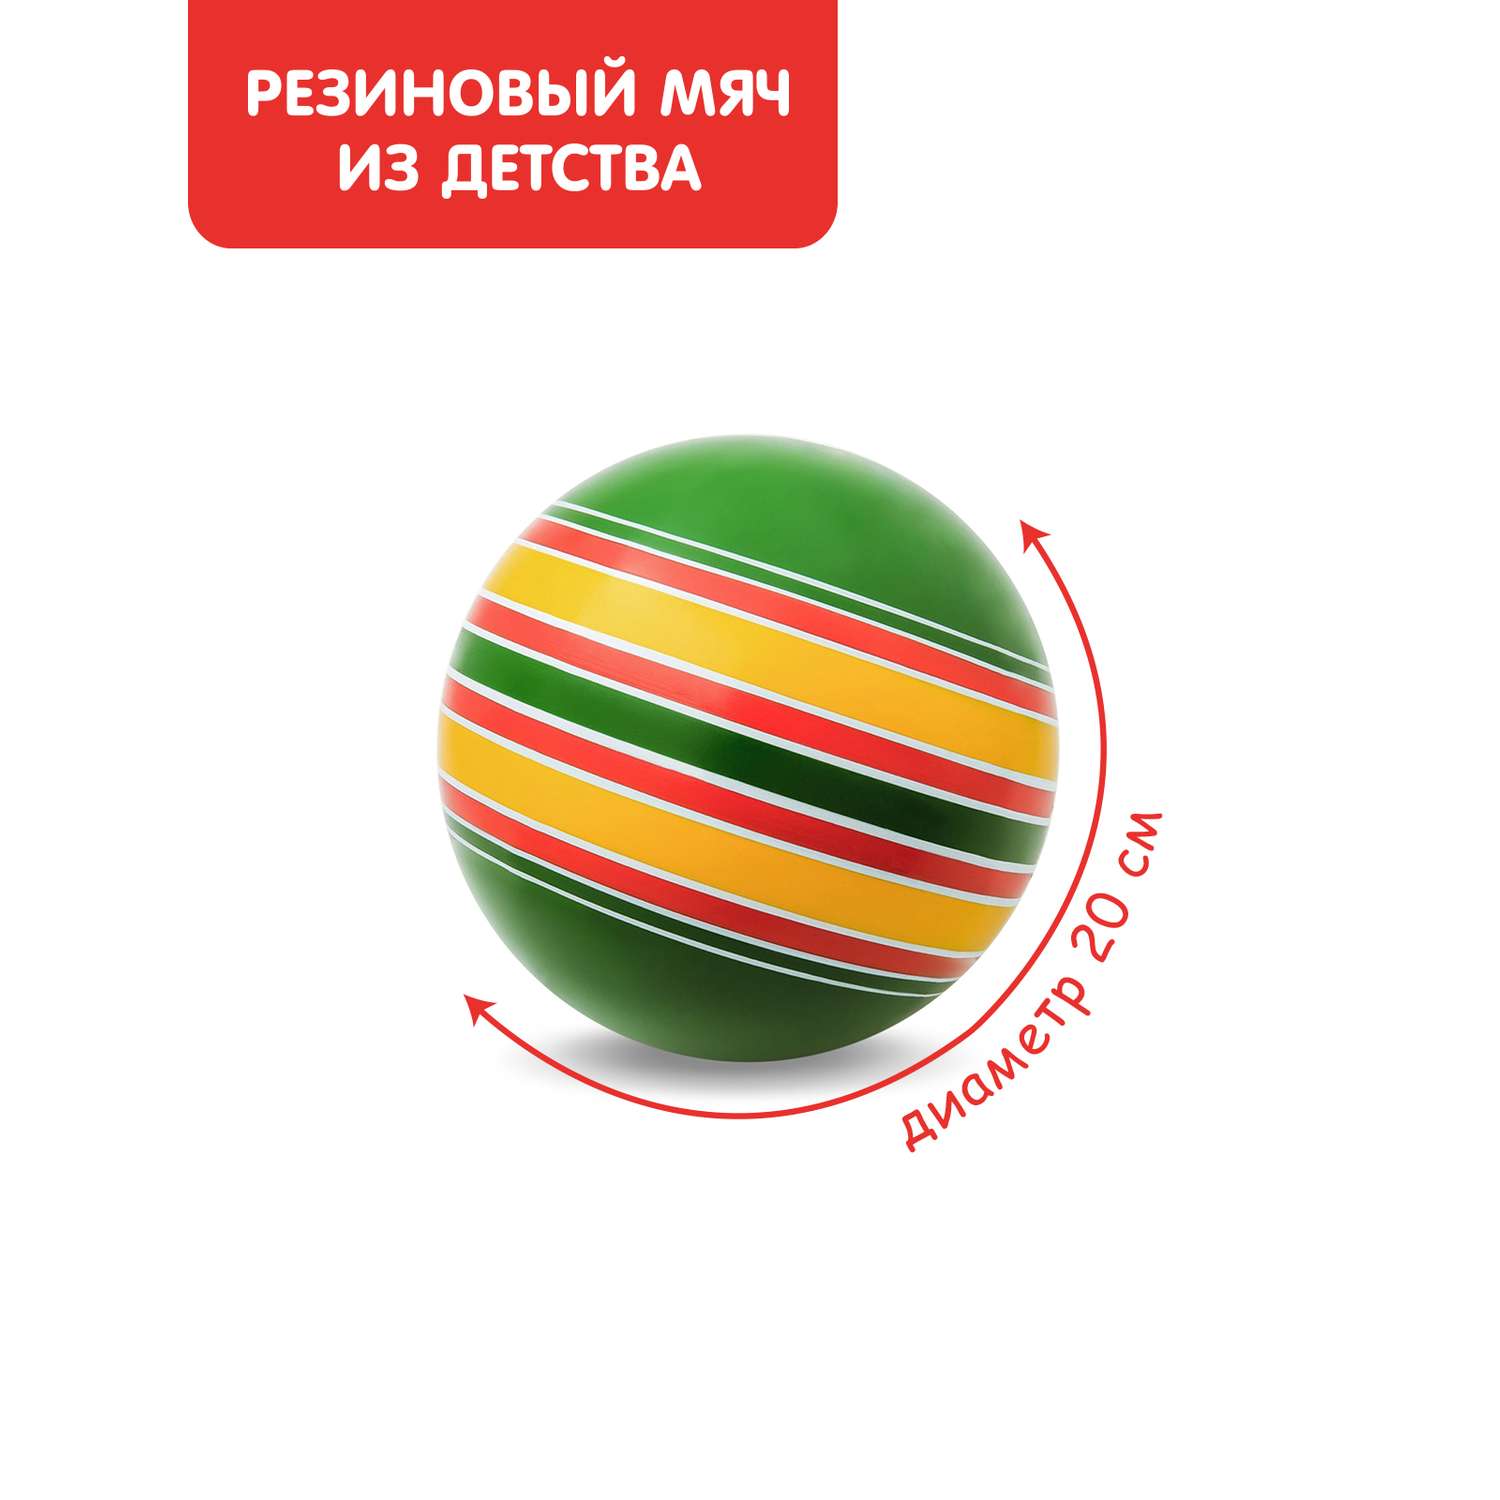 Мяч ЧАПАЕВ диаметр 200 мм «Ленточки» зеленый/красный - фото 1